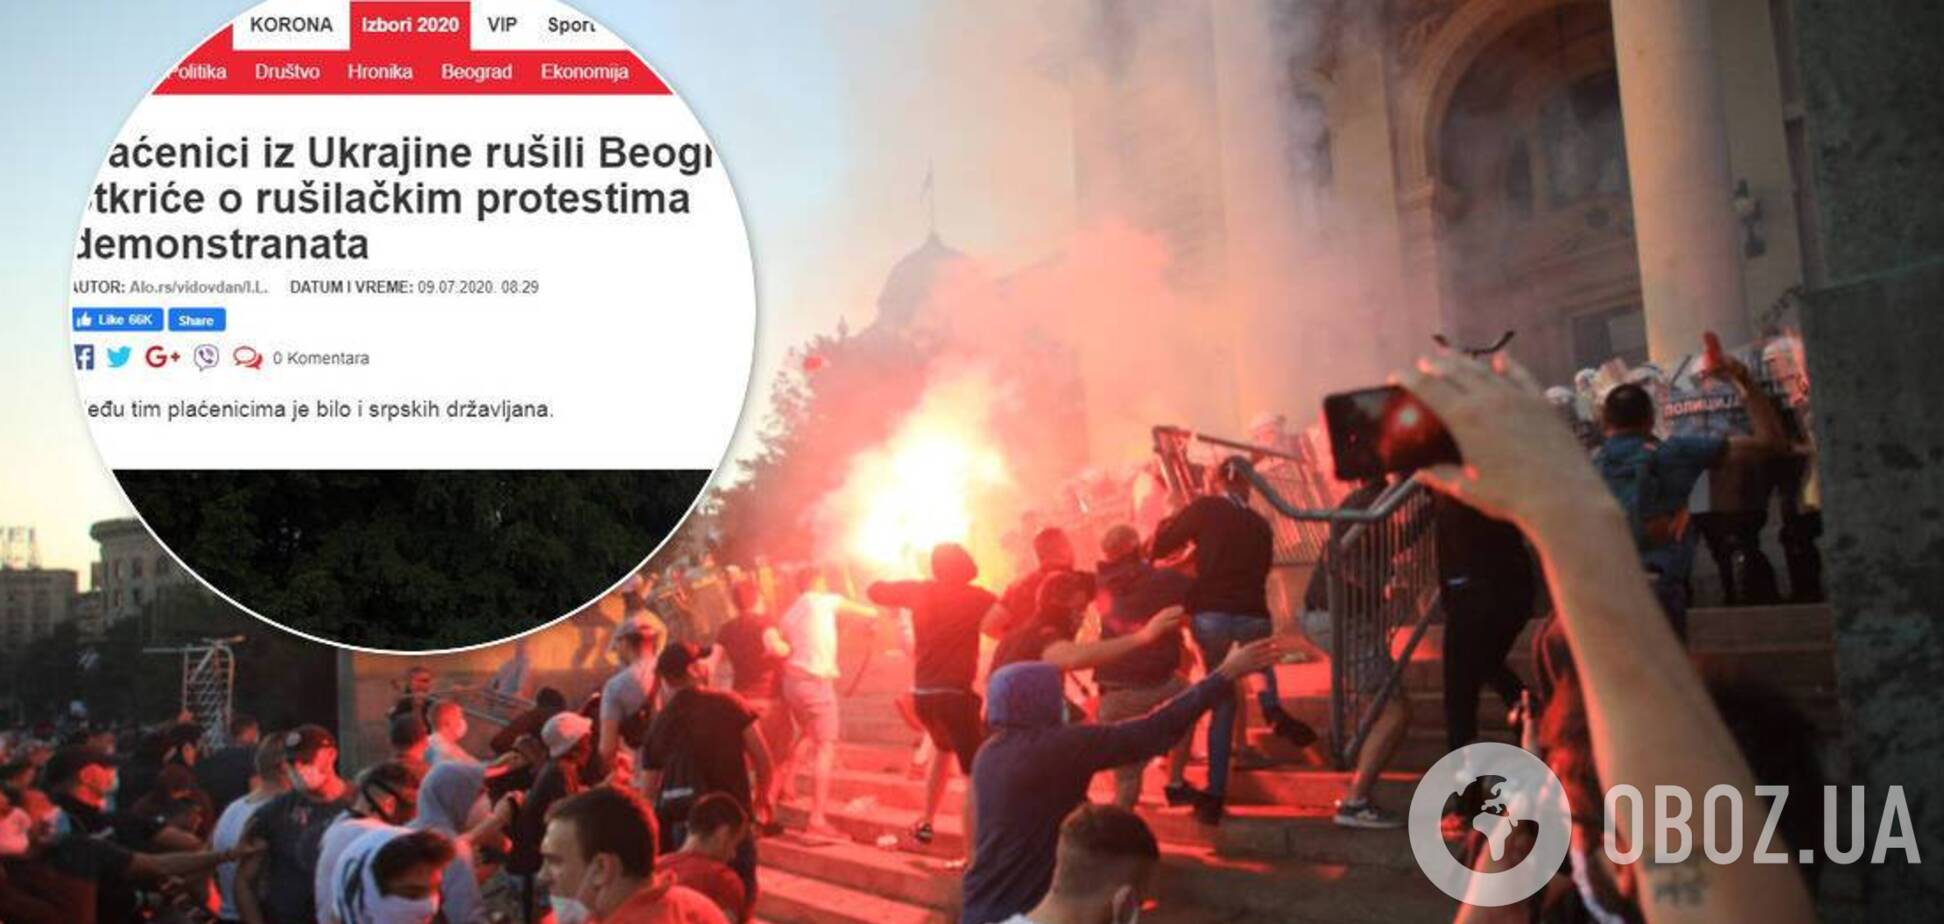 Сербские СМИ запустили фейк об “украинских наемниках” во время беспорядков в Белграде